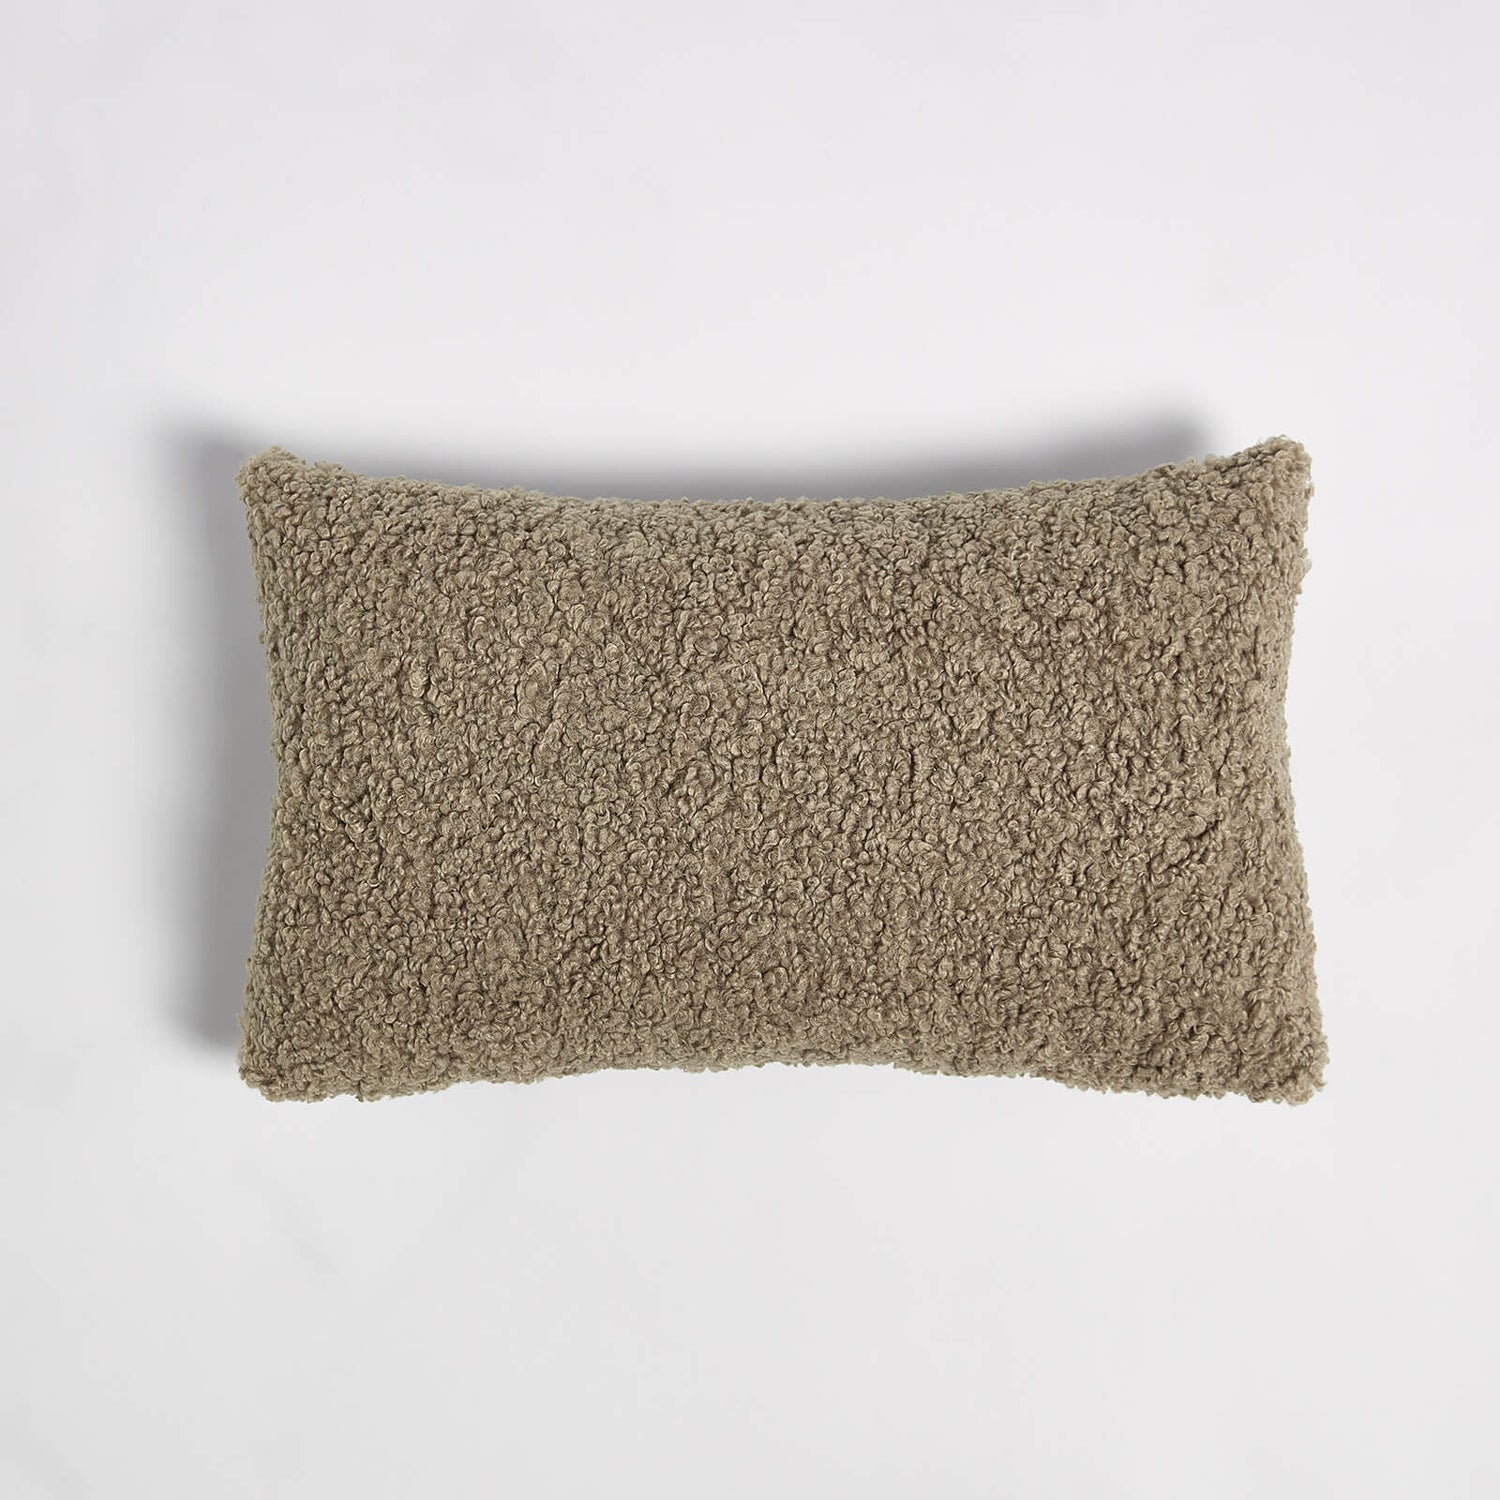 ïn home Faux Sheep Skin Cushion - Light Brown - 30x50cm